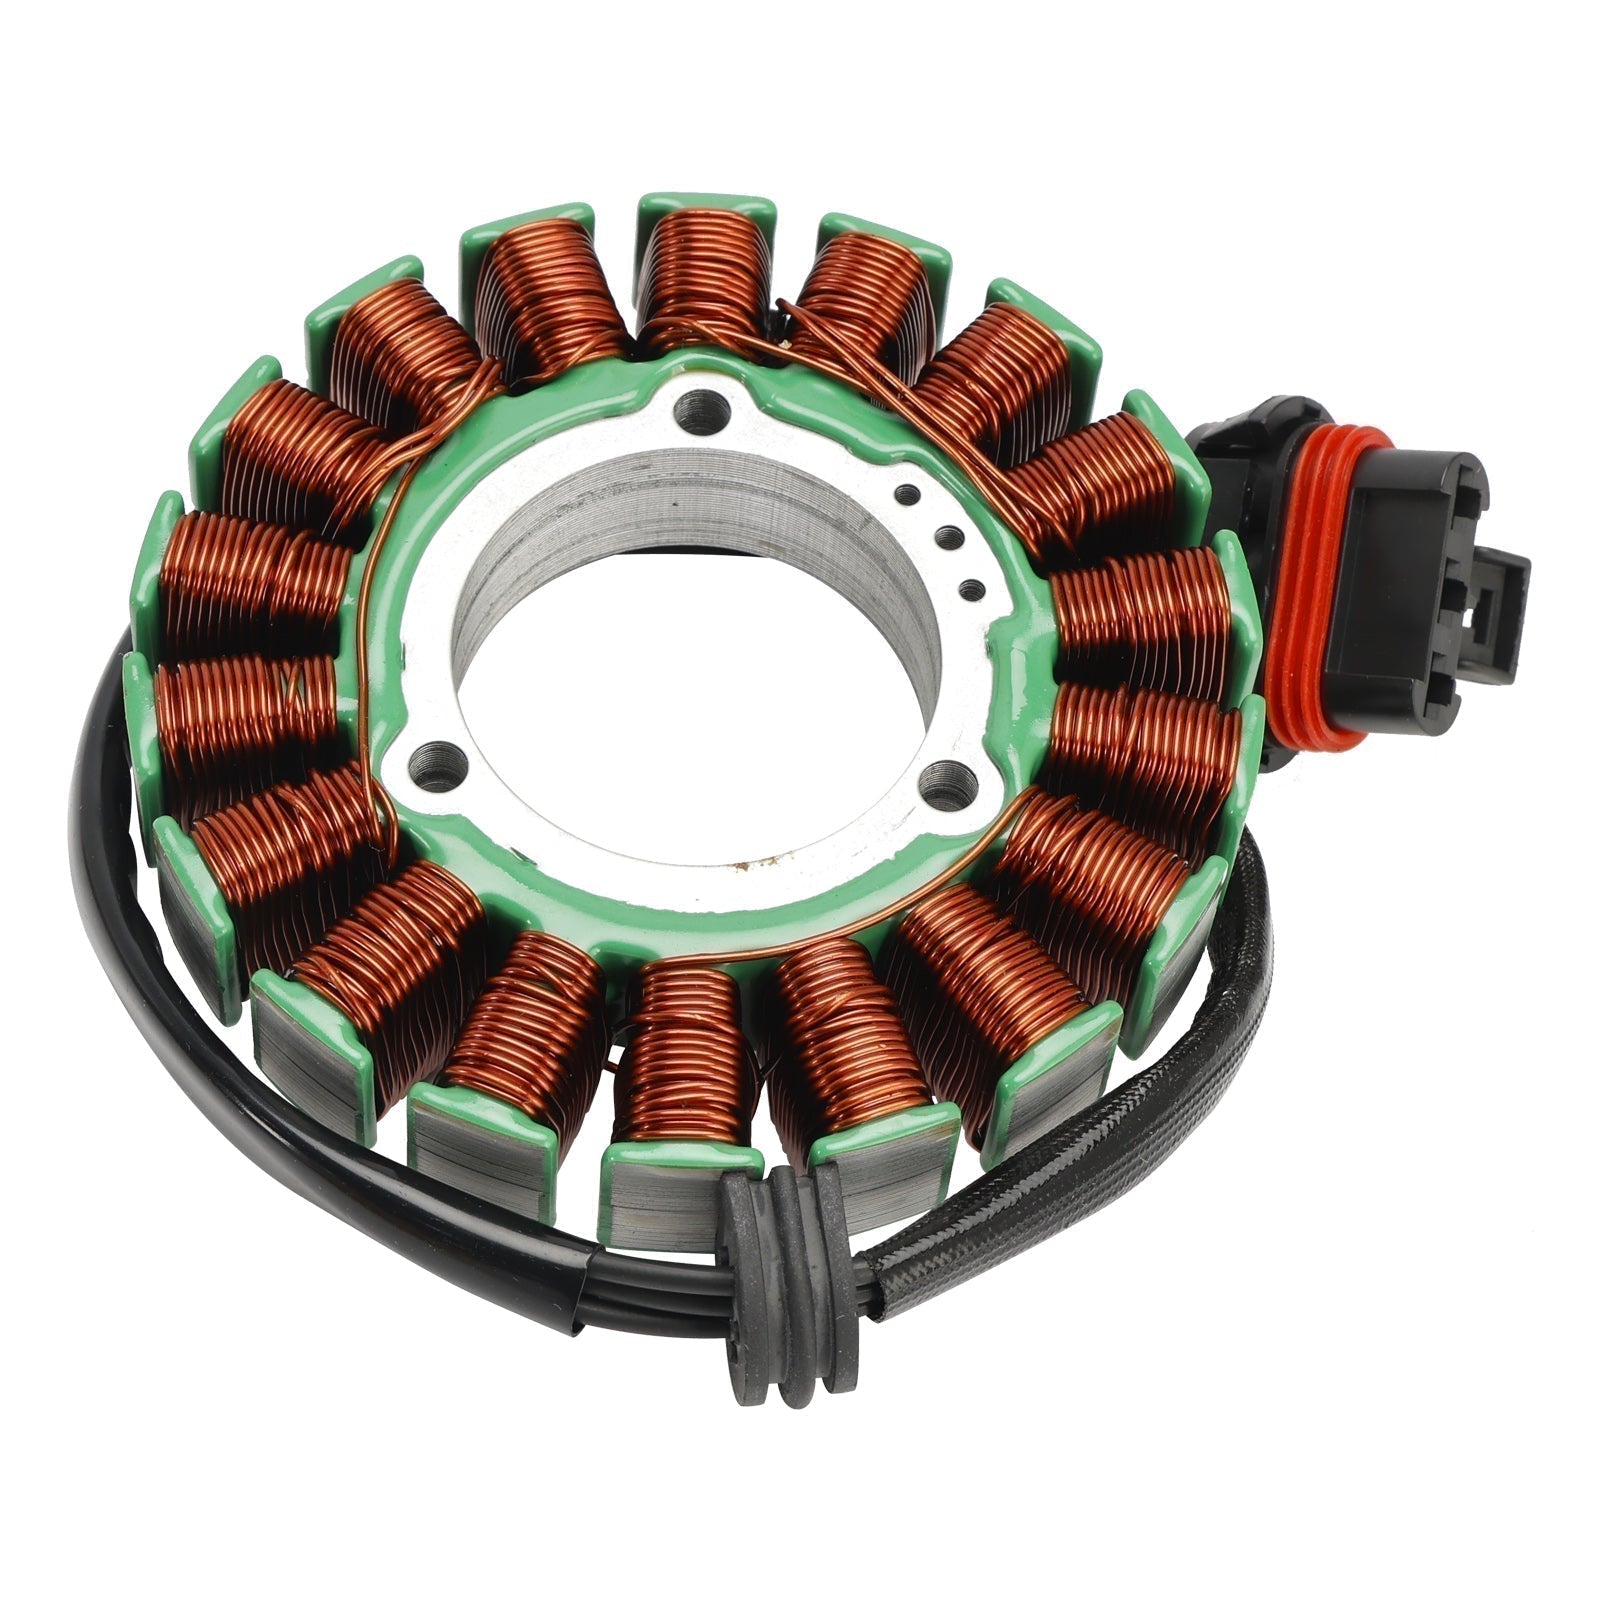 Stator de bobine magnétique Polaris RZR 2021 Turbo S + régulateur de tension + joint Assy 2021 – 1000, 4013970